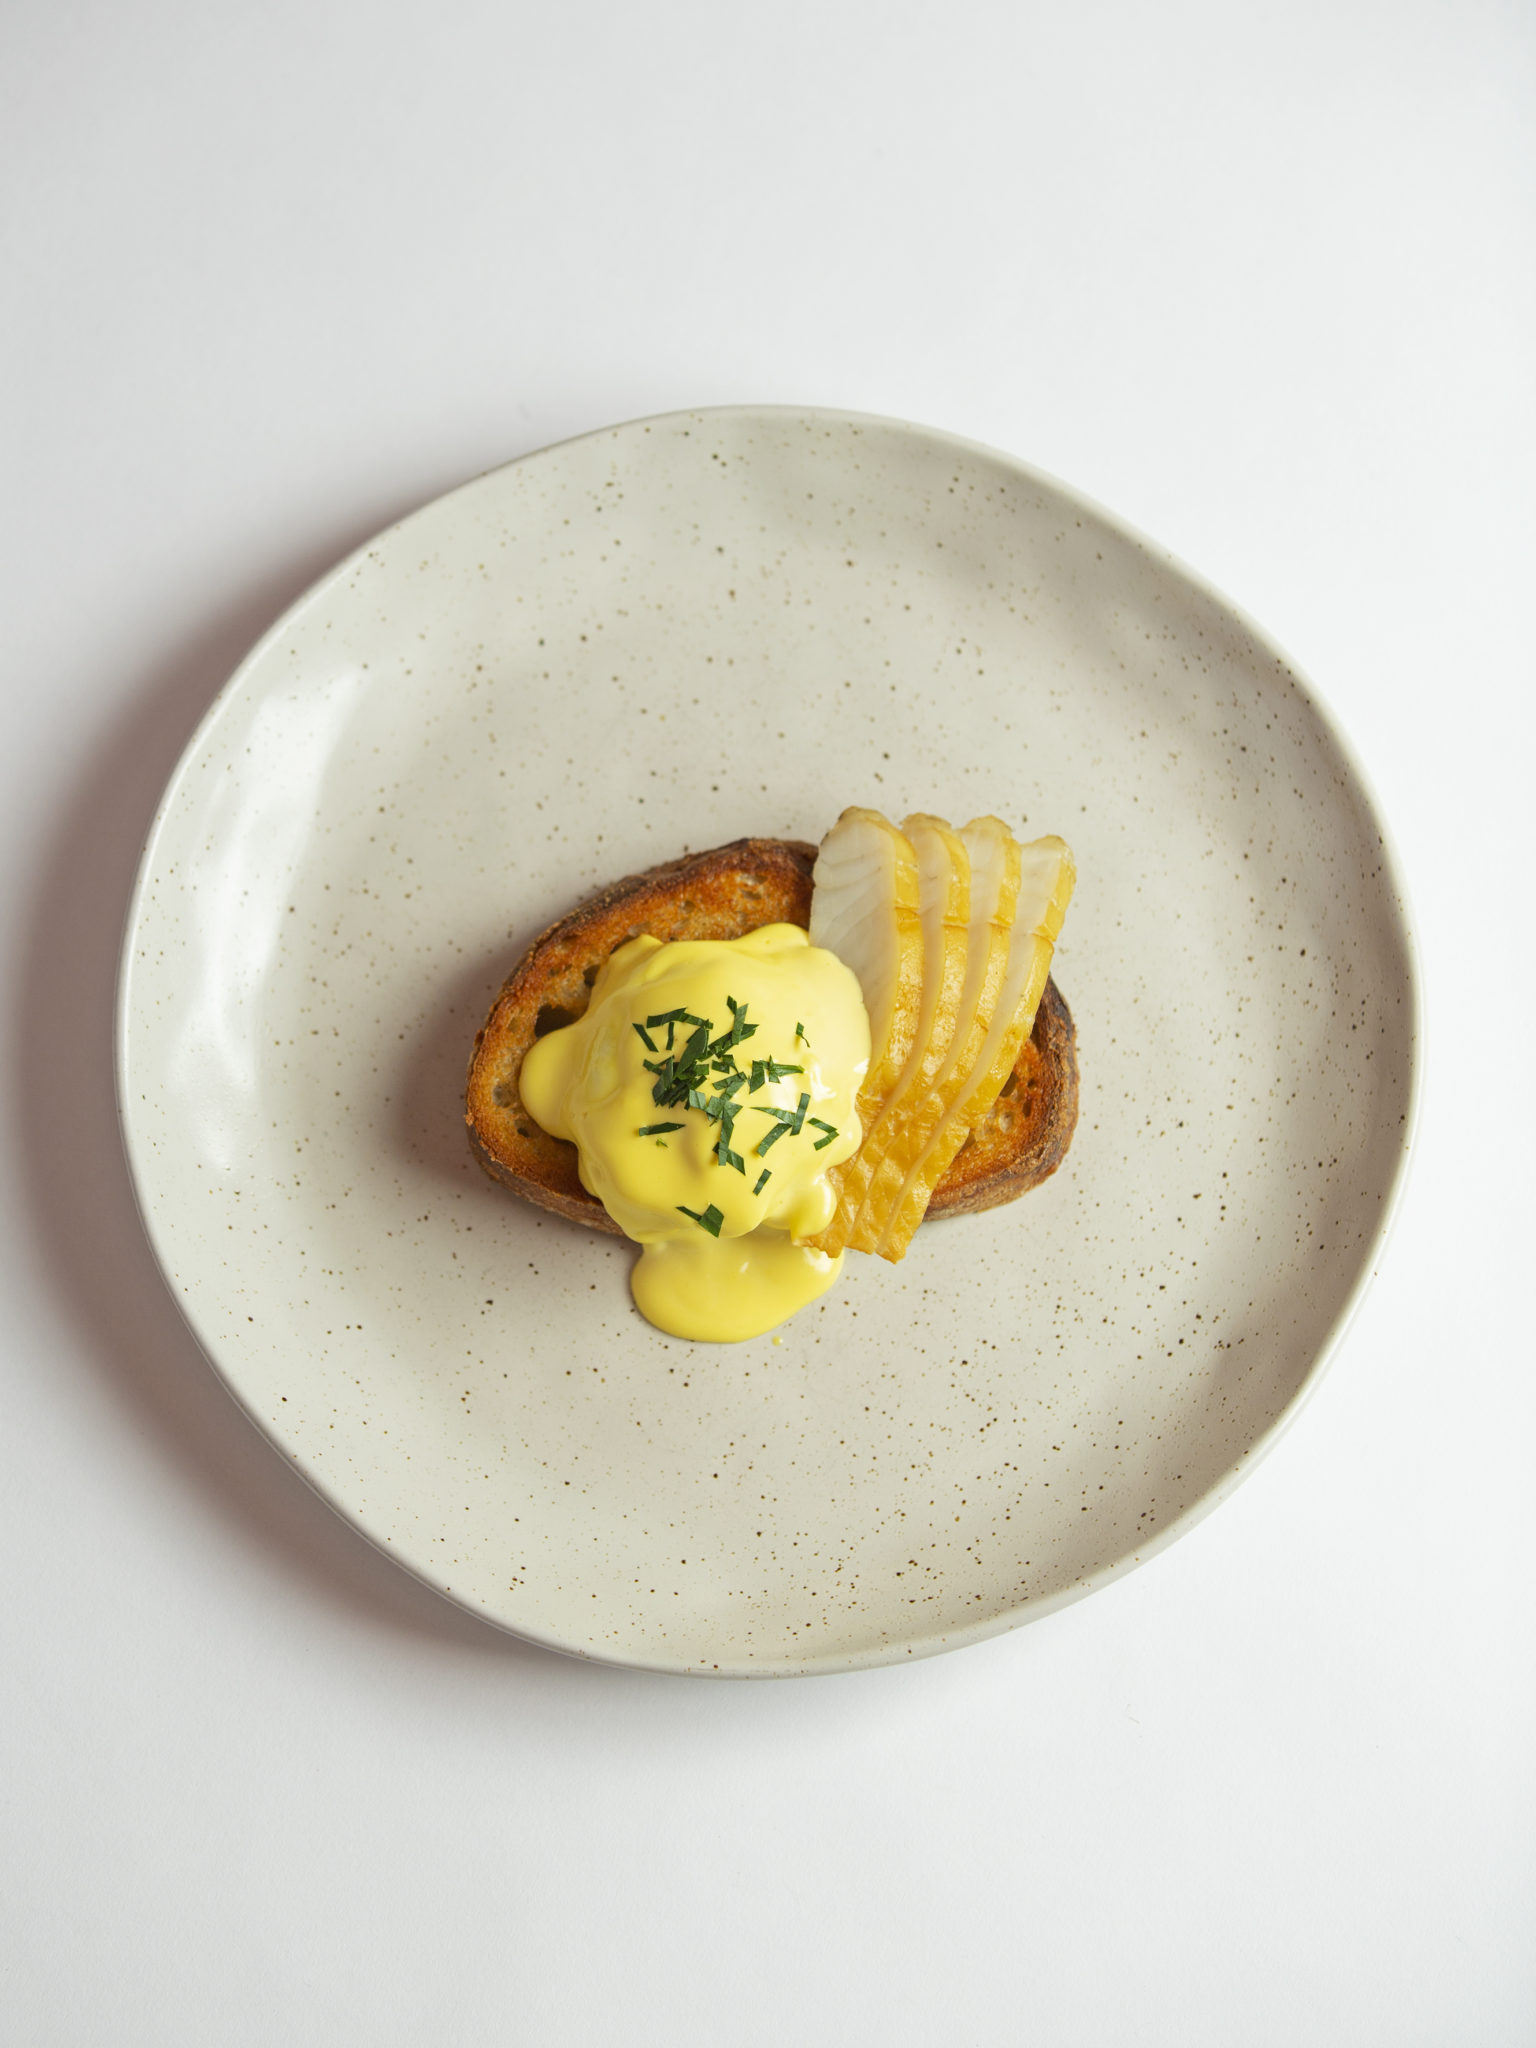 Eggs Aquna – Smoked Aquna Murray Cod, sourdough, poached egg, hollandaise